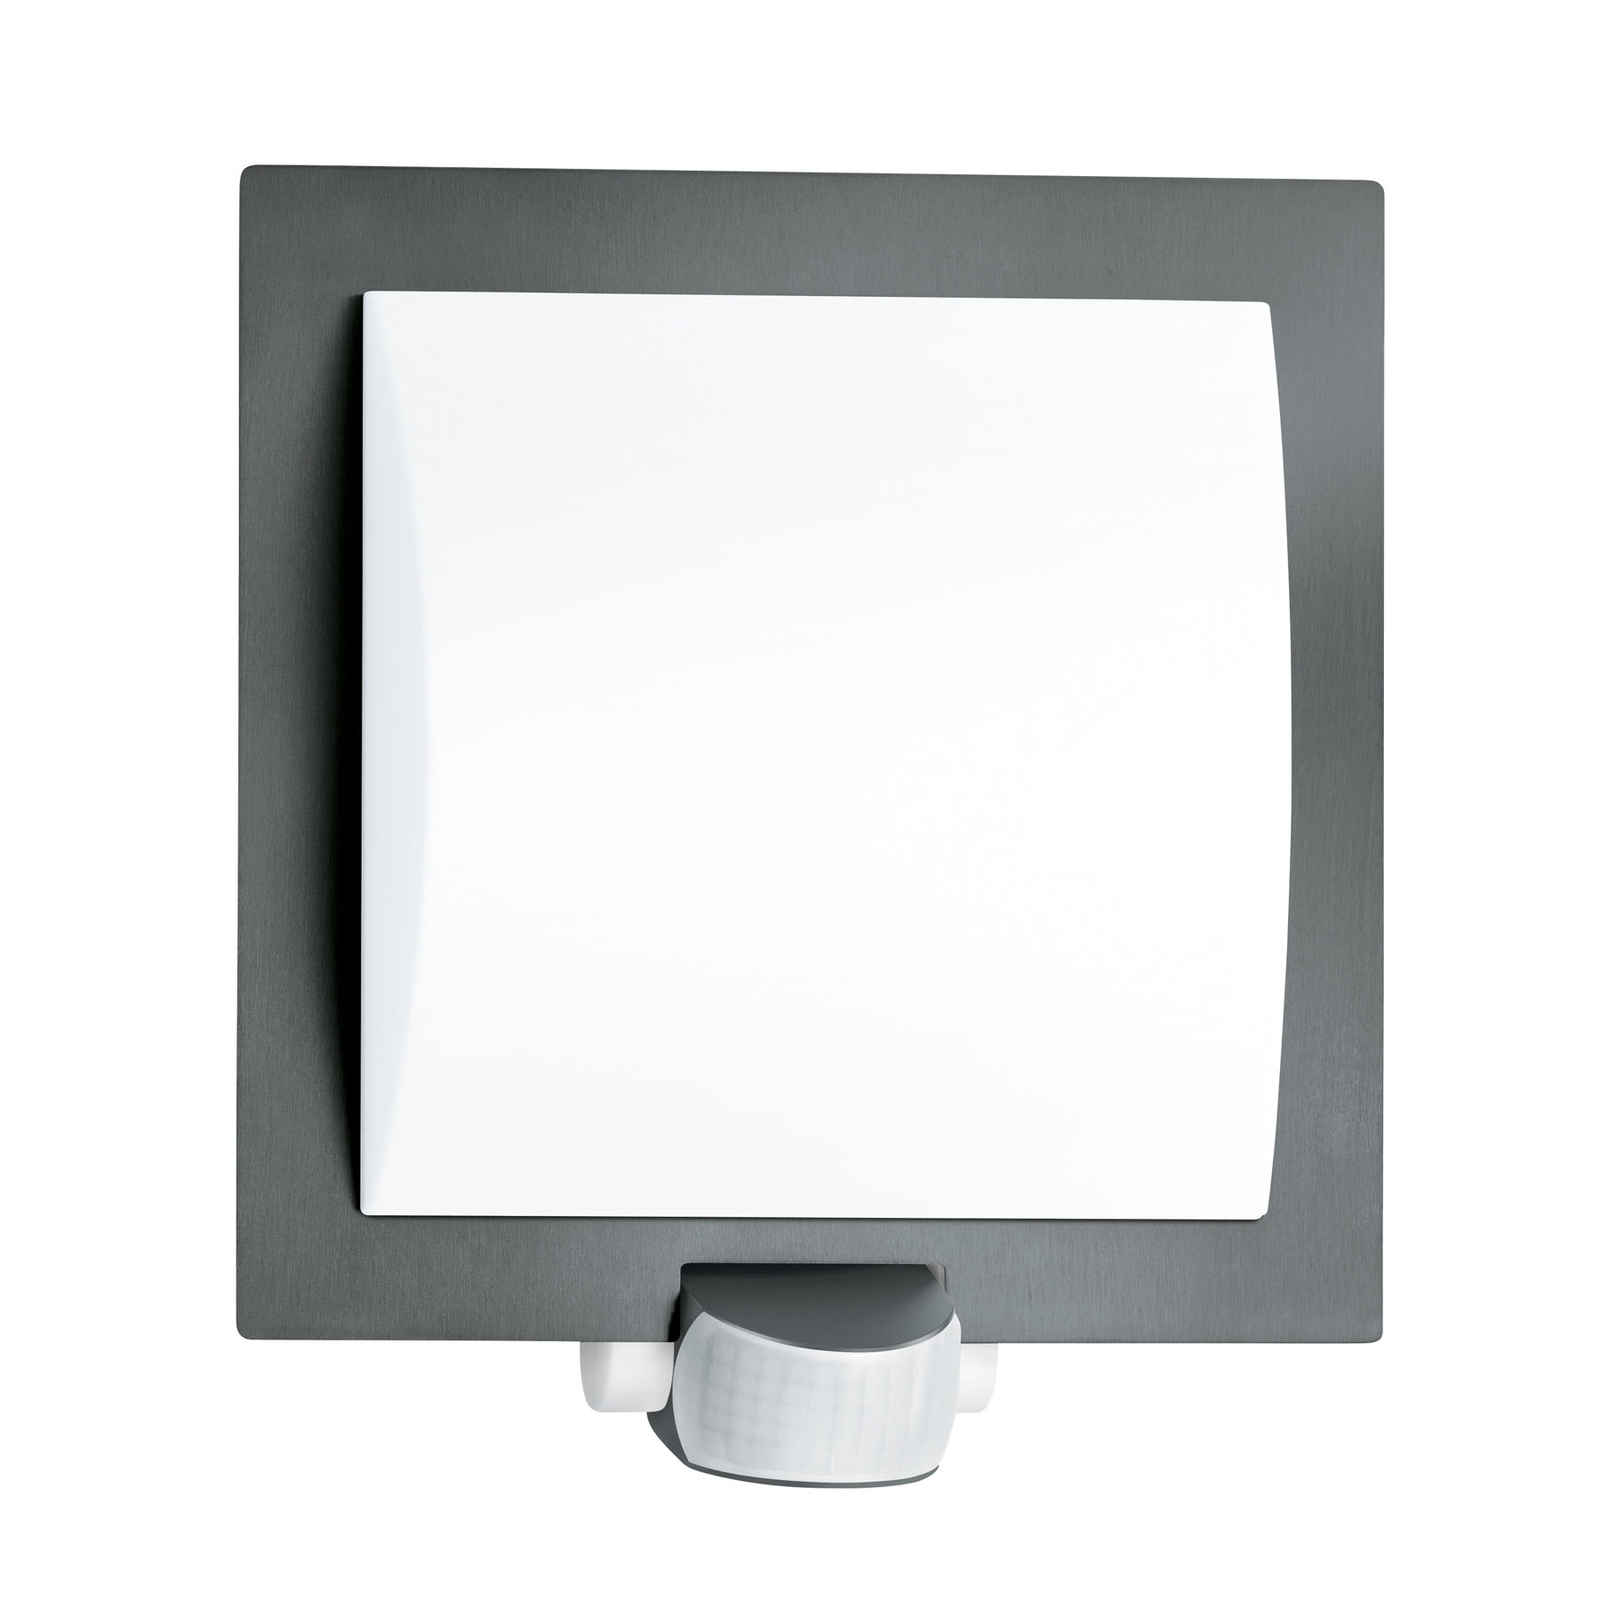 STEINEL L 20 S outdoor wall light sensor, grey